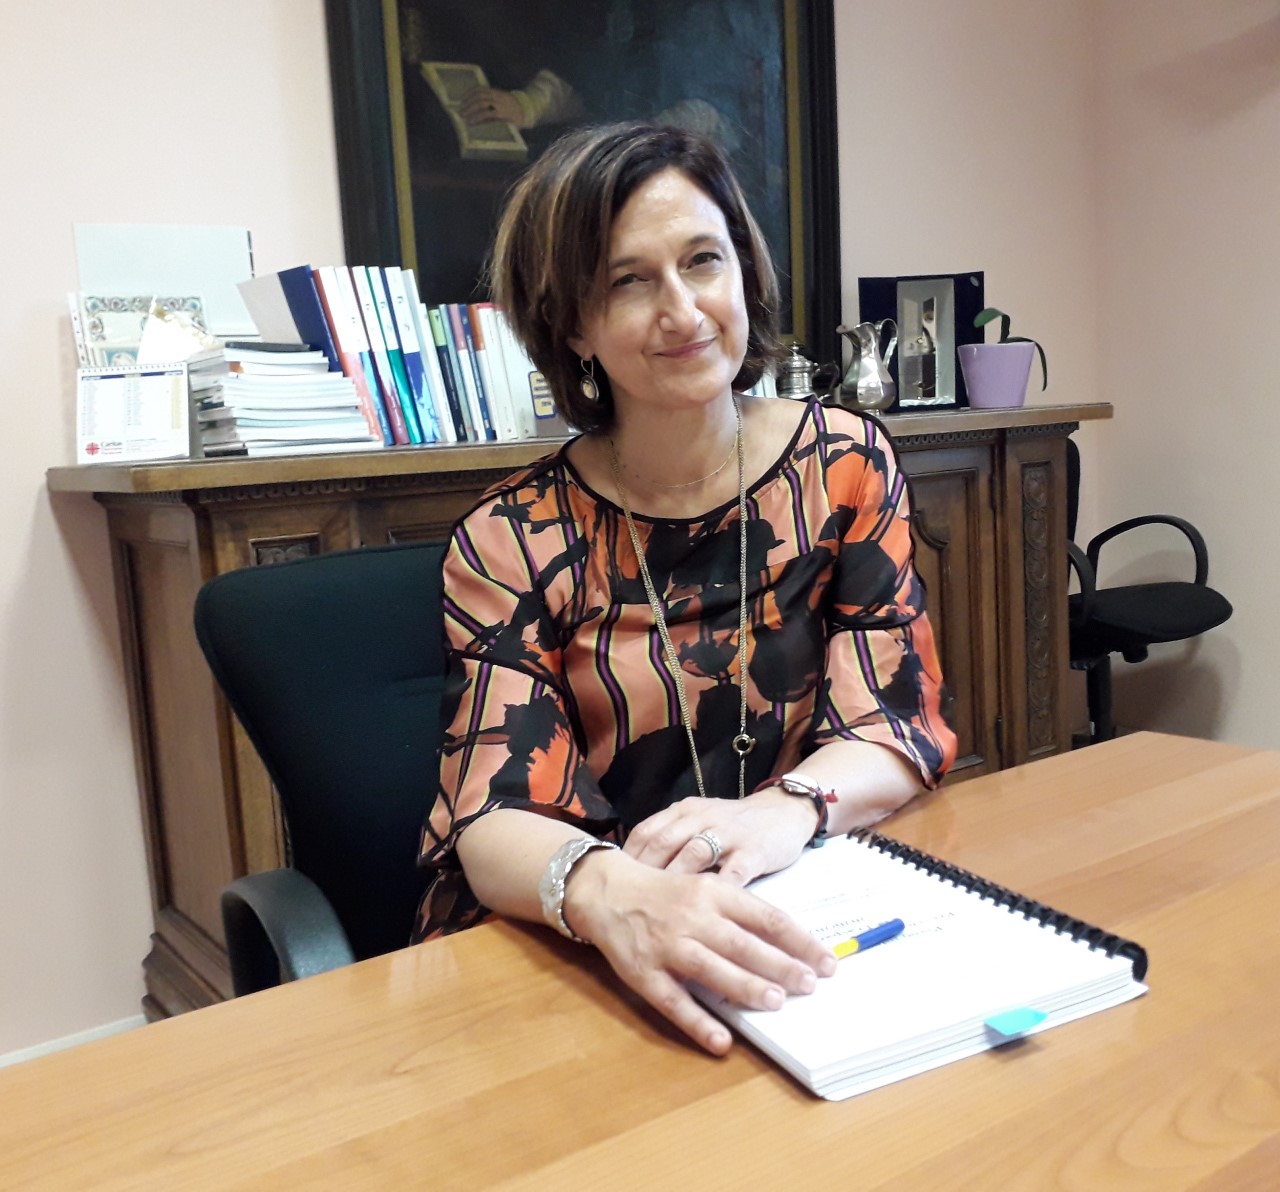  Antonio Brambilla va in pensione, Anna Maria Petrini è la nuova direttrice generale dell’Ausl di Modena